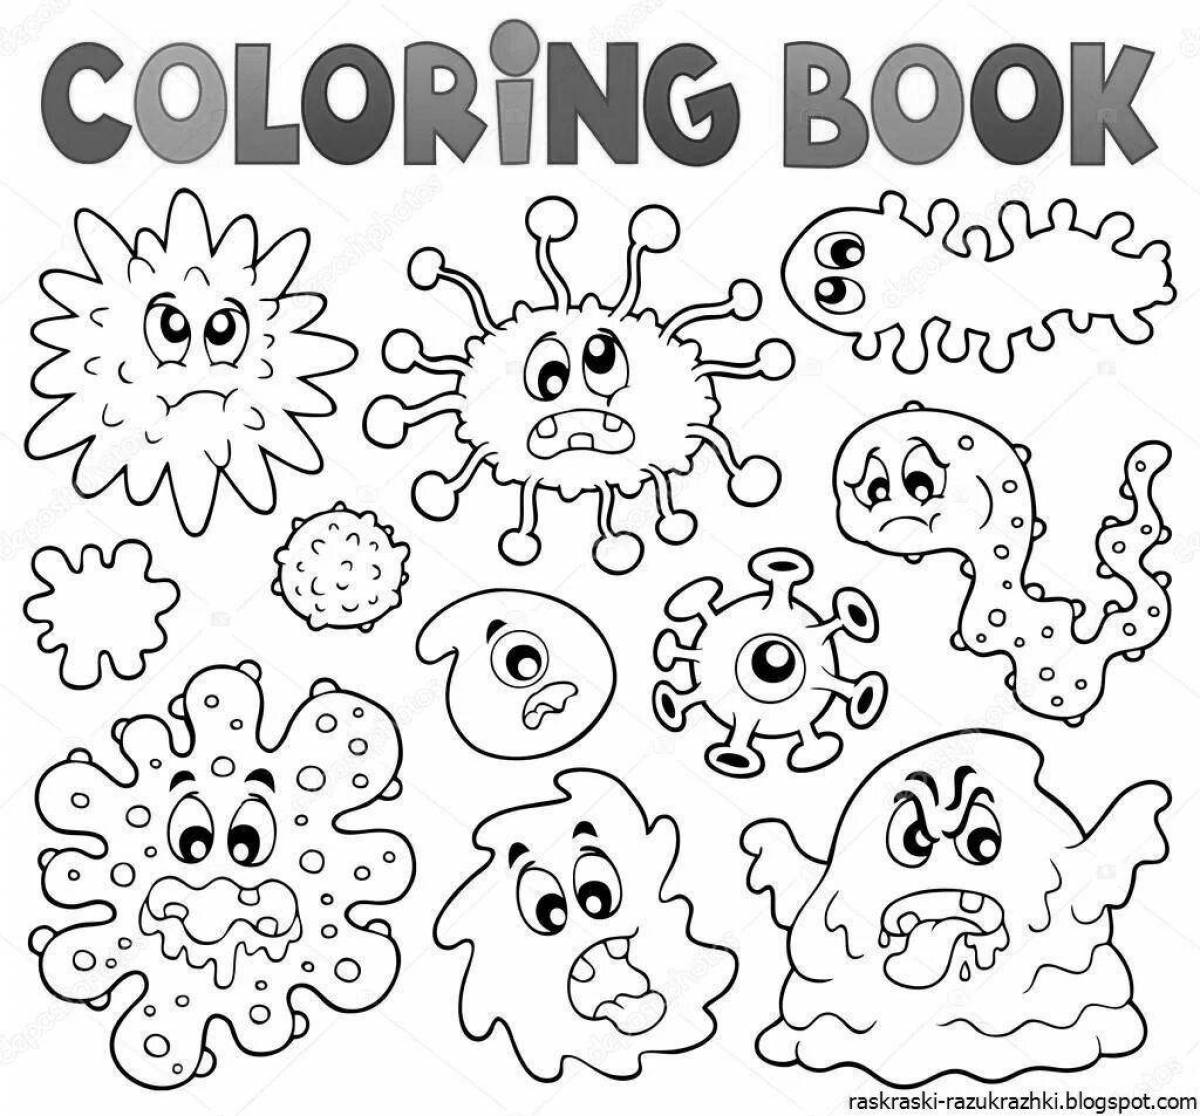 Fun coloring of bacteria